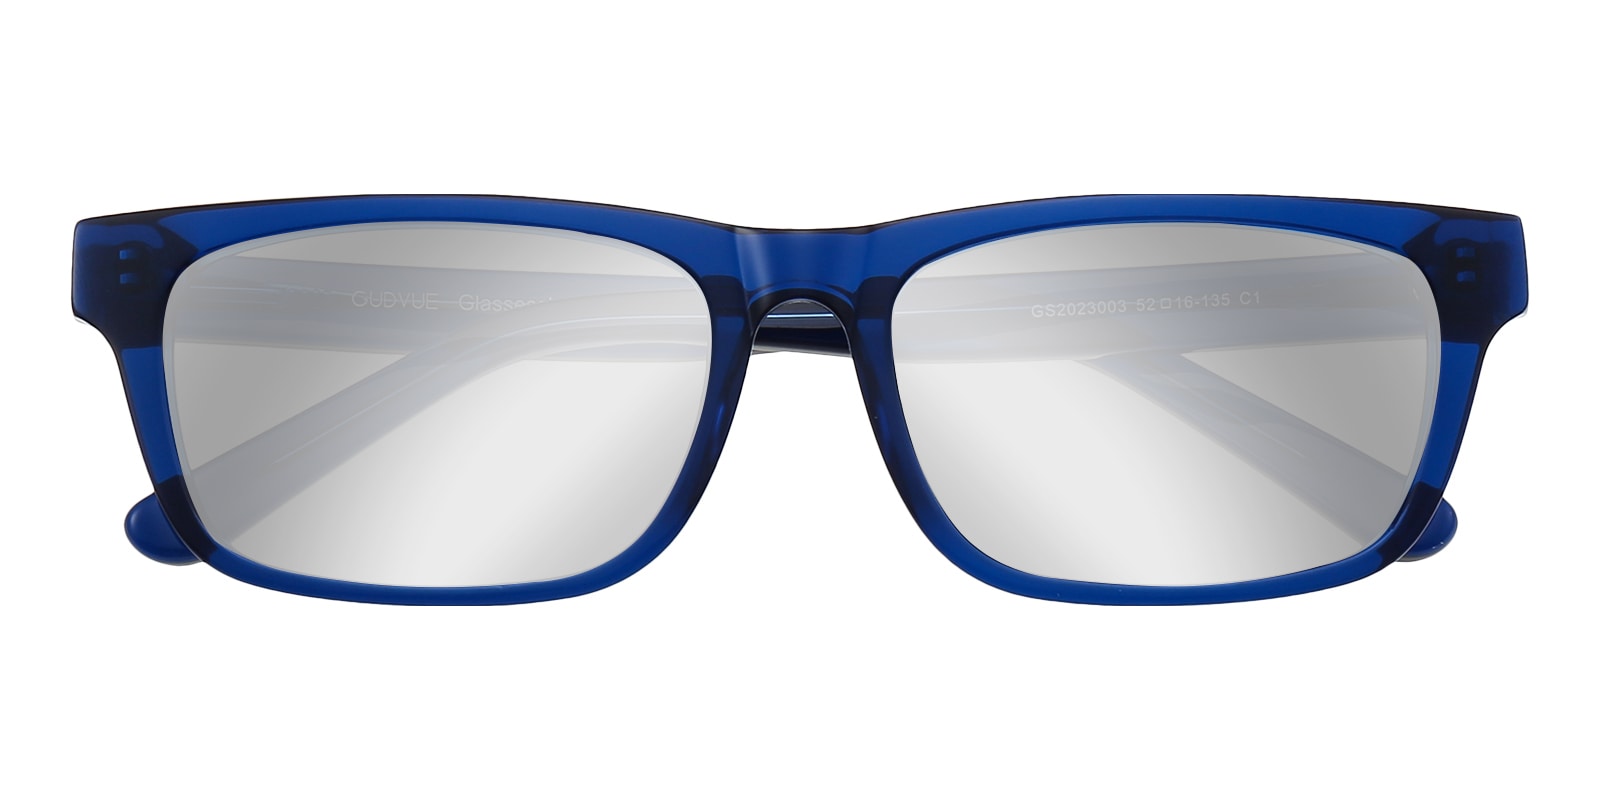 Rectangle Eyeglasses, Full Frame Blue-Silver Mirrored Coating Plastic - FZ2112JMY